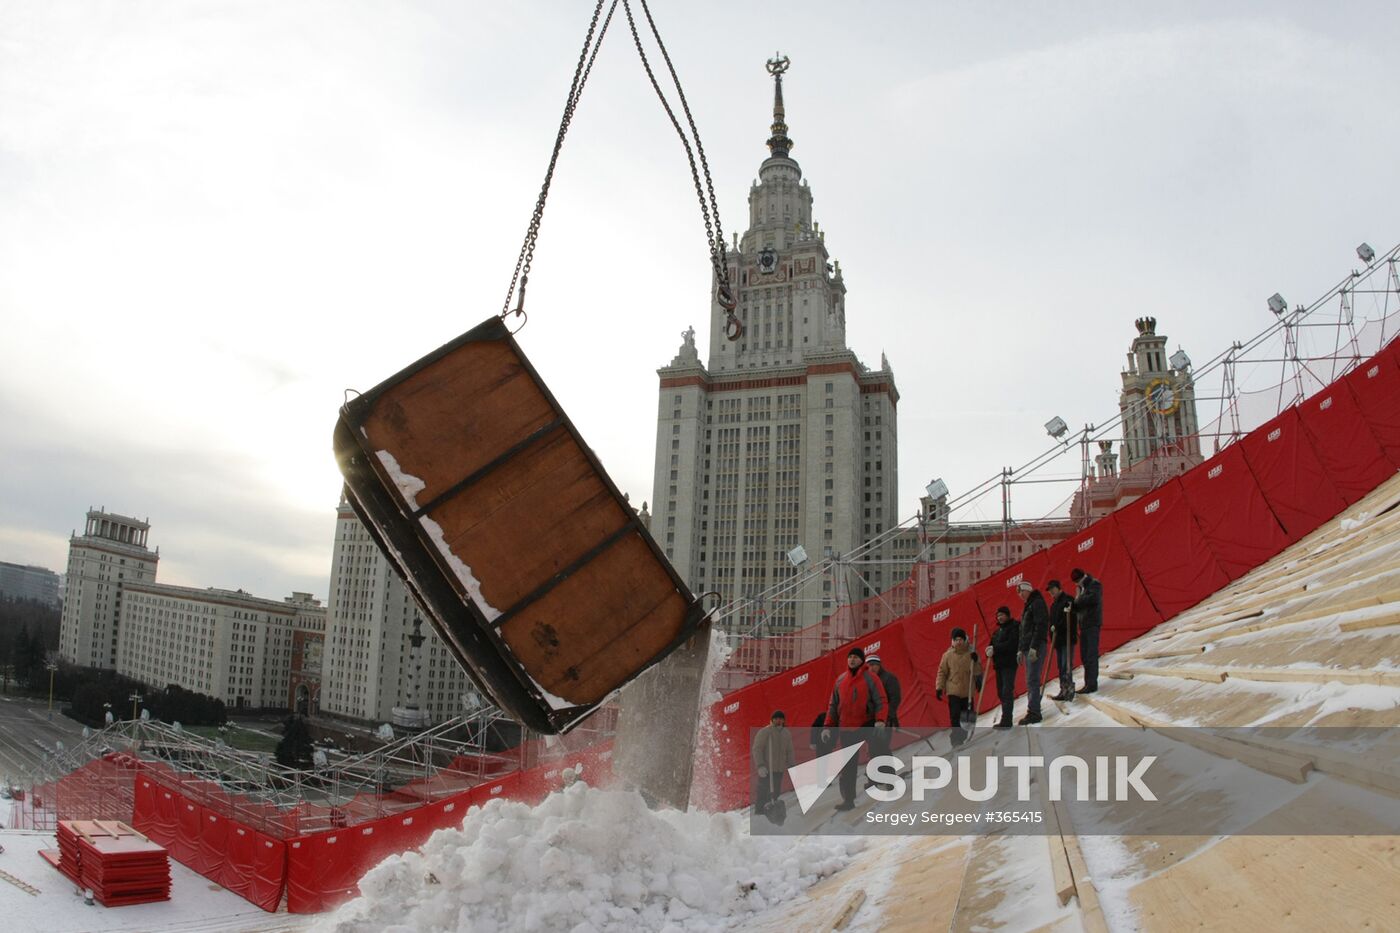 Installing a ski ramp on Vorobyovy Gory